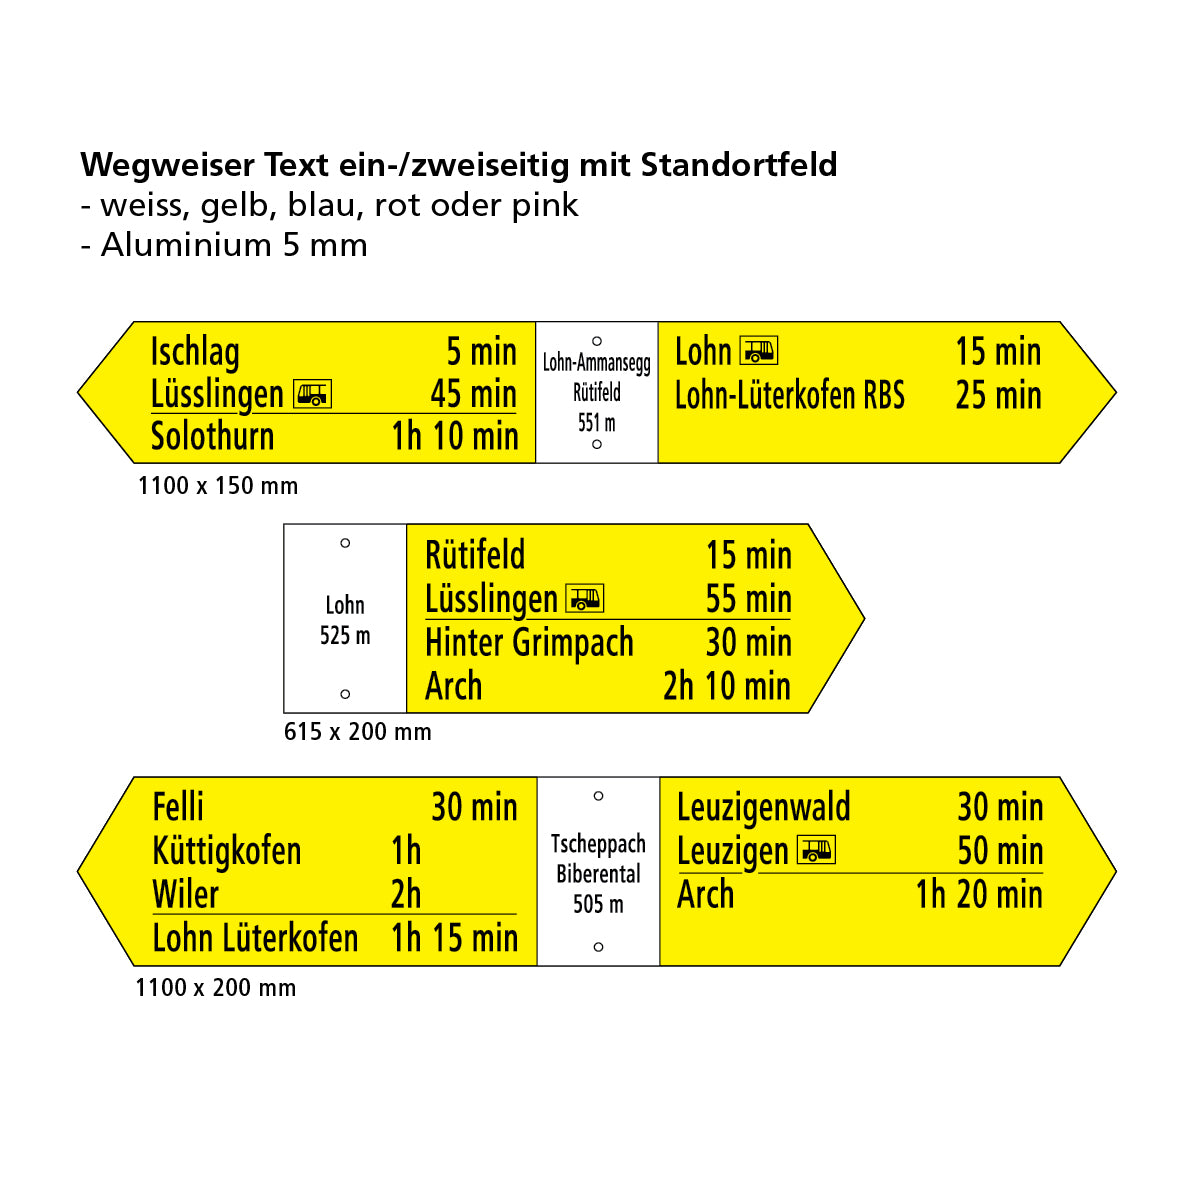 Wegweiser 615/120 mm, Text 1-seitig mit Standortfeld, hi/vo pulverbeschichtet und lackiert, Alu 5 mm, gelocht